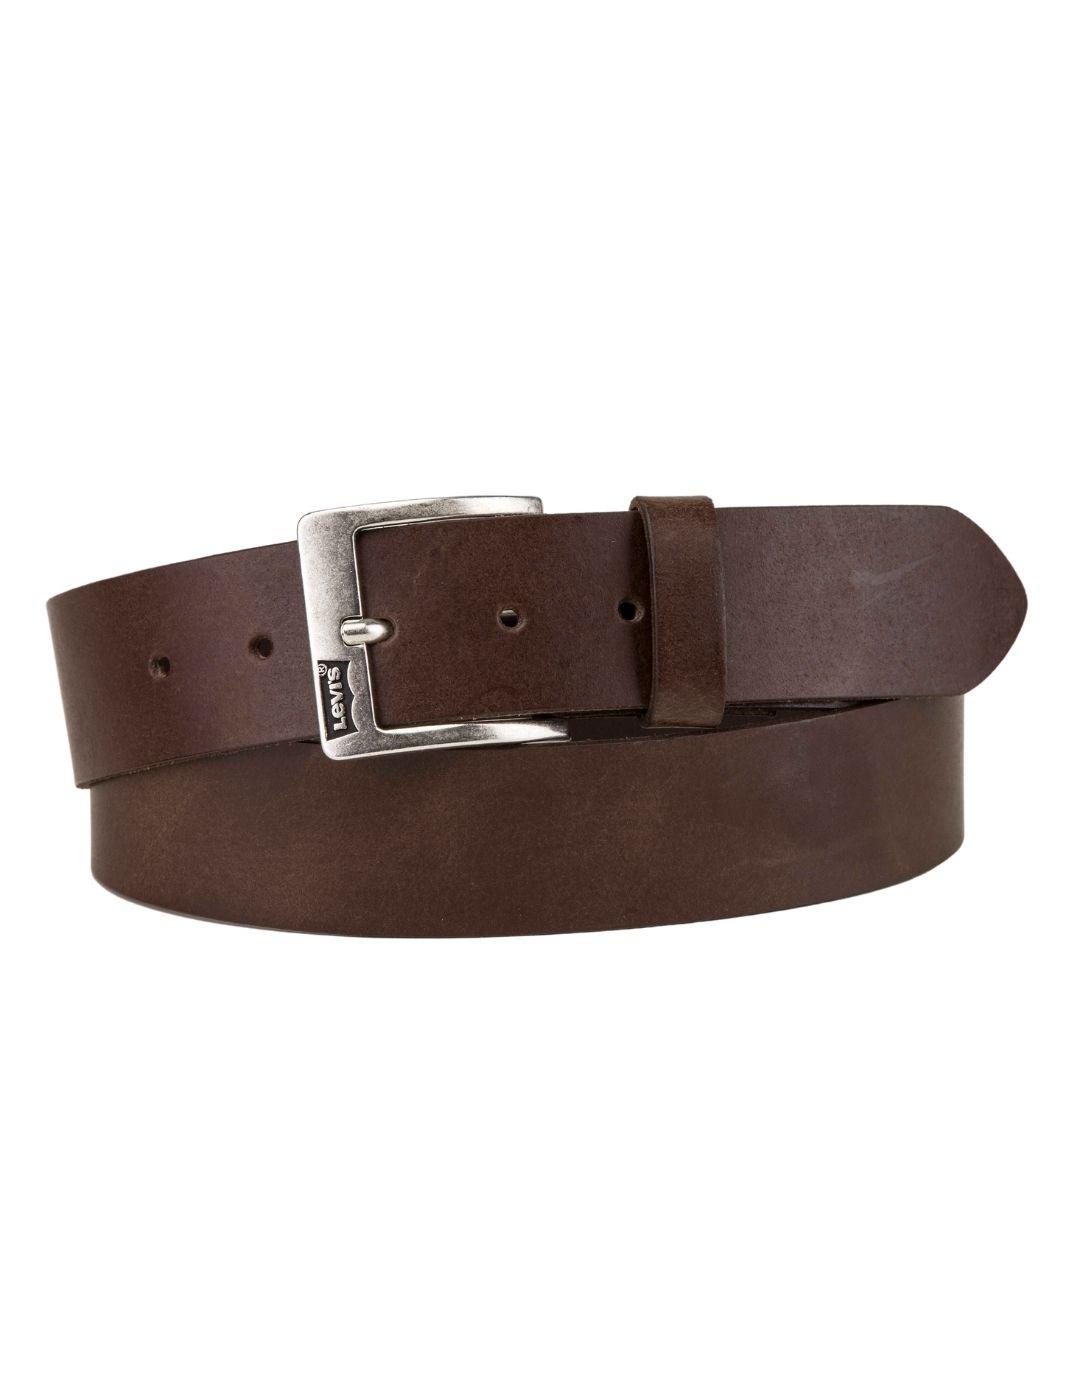 Cinturón Levi's® marrón de cuero unisex